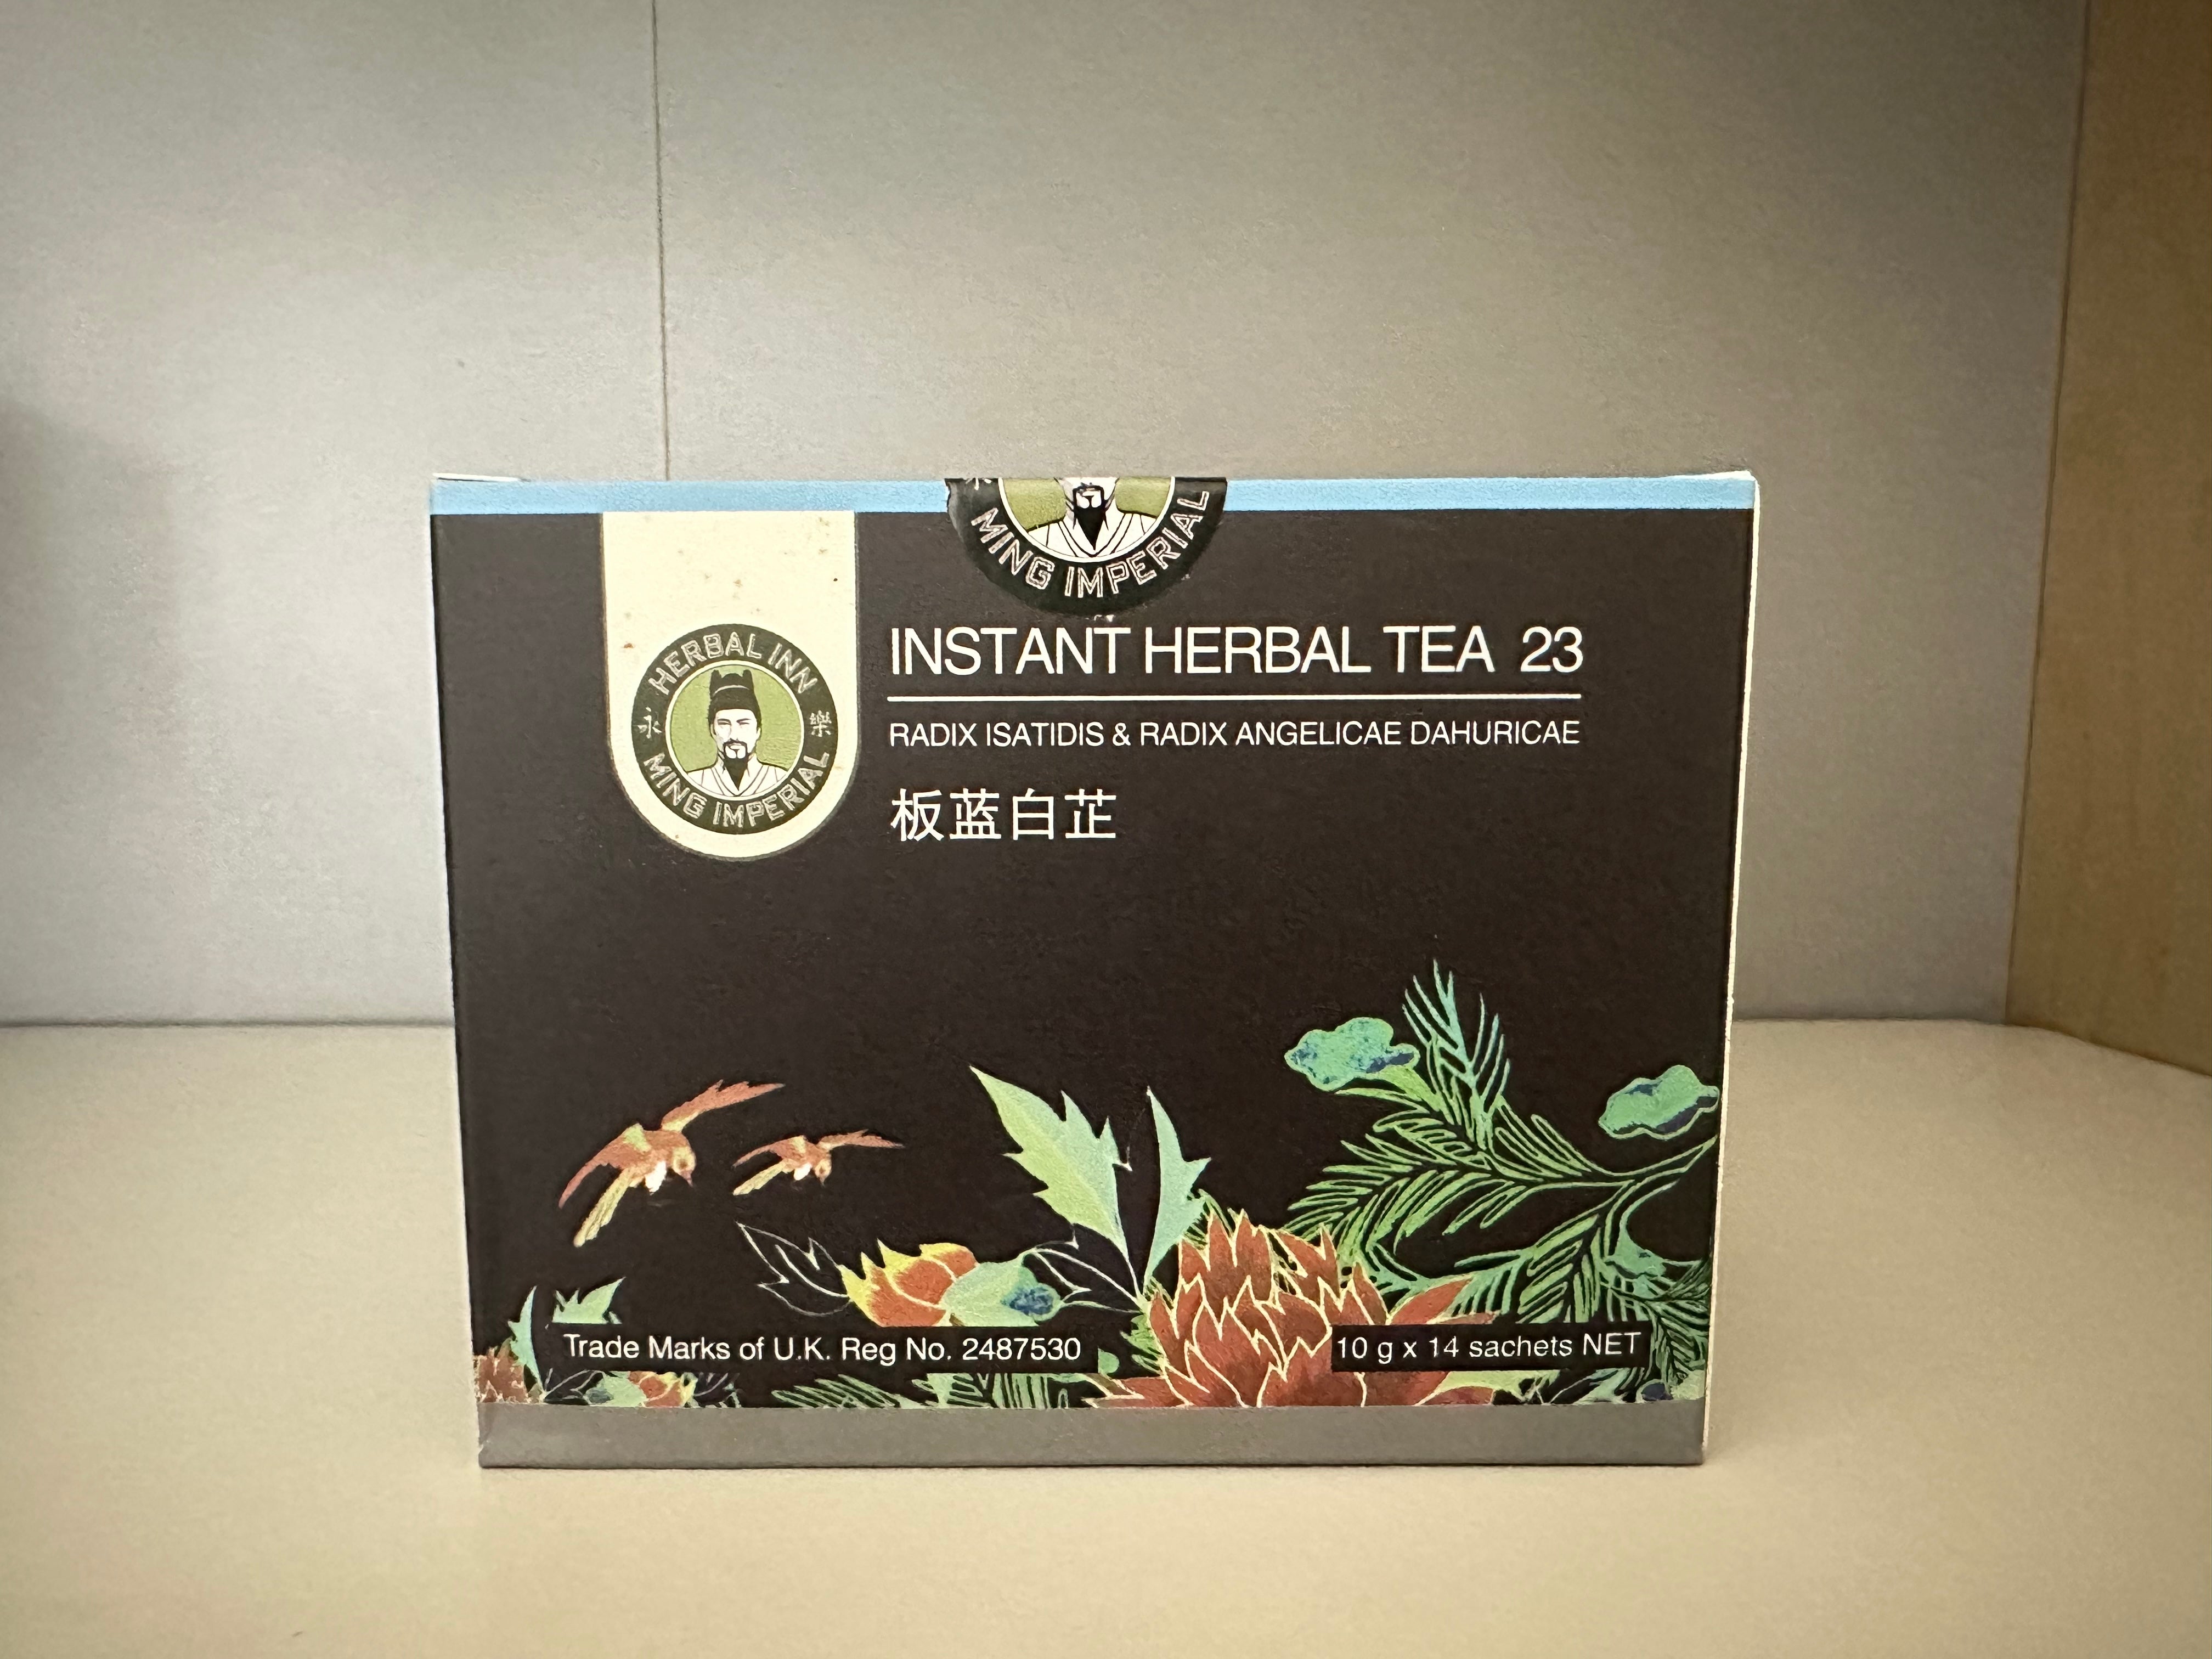 Instant Herbal Tea 23 - Radix Isatidis & Radix Angelicae Dahuricae